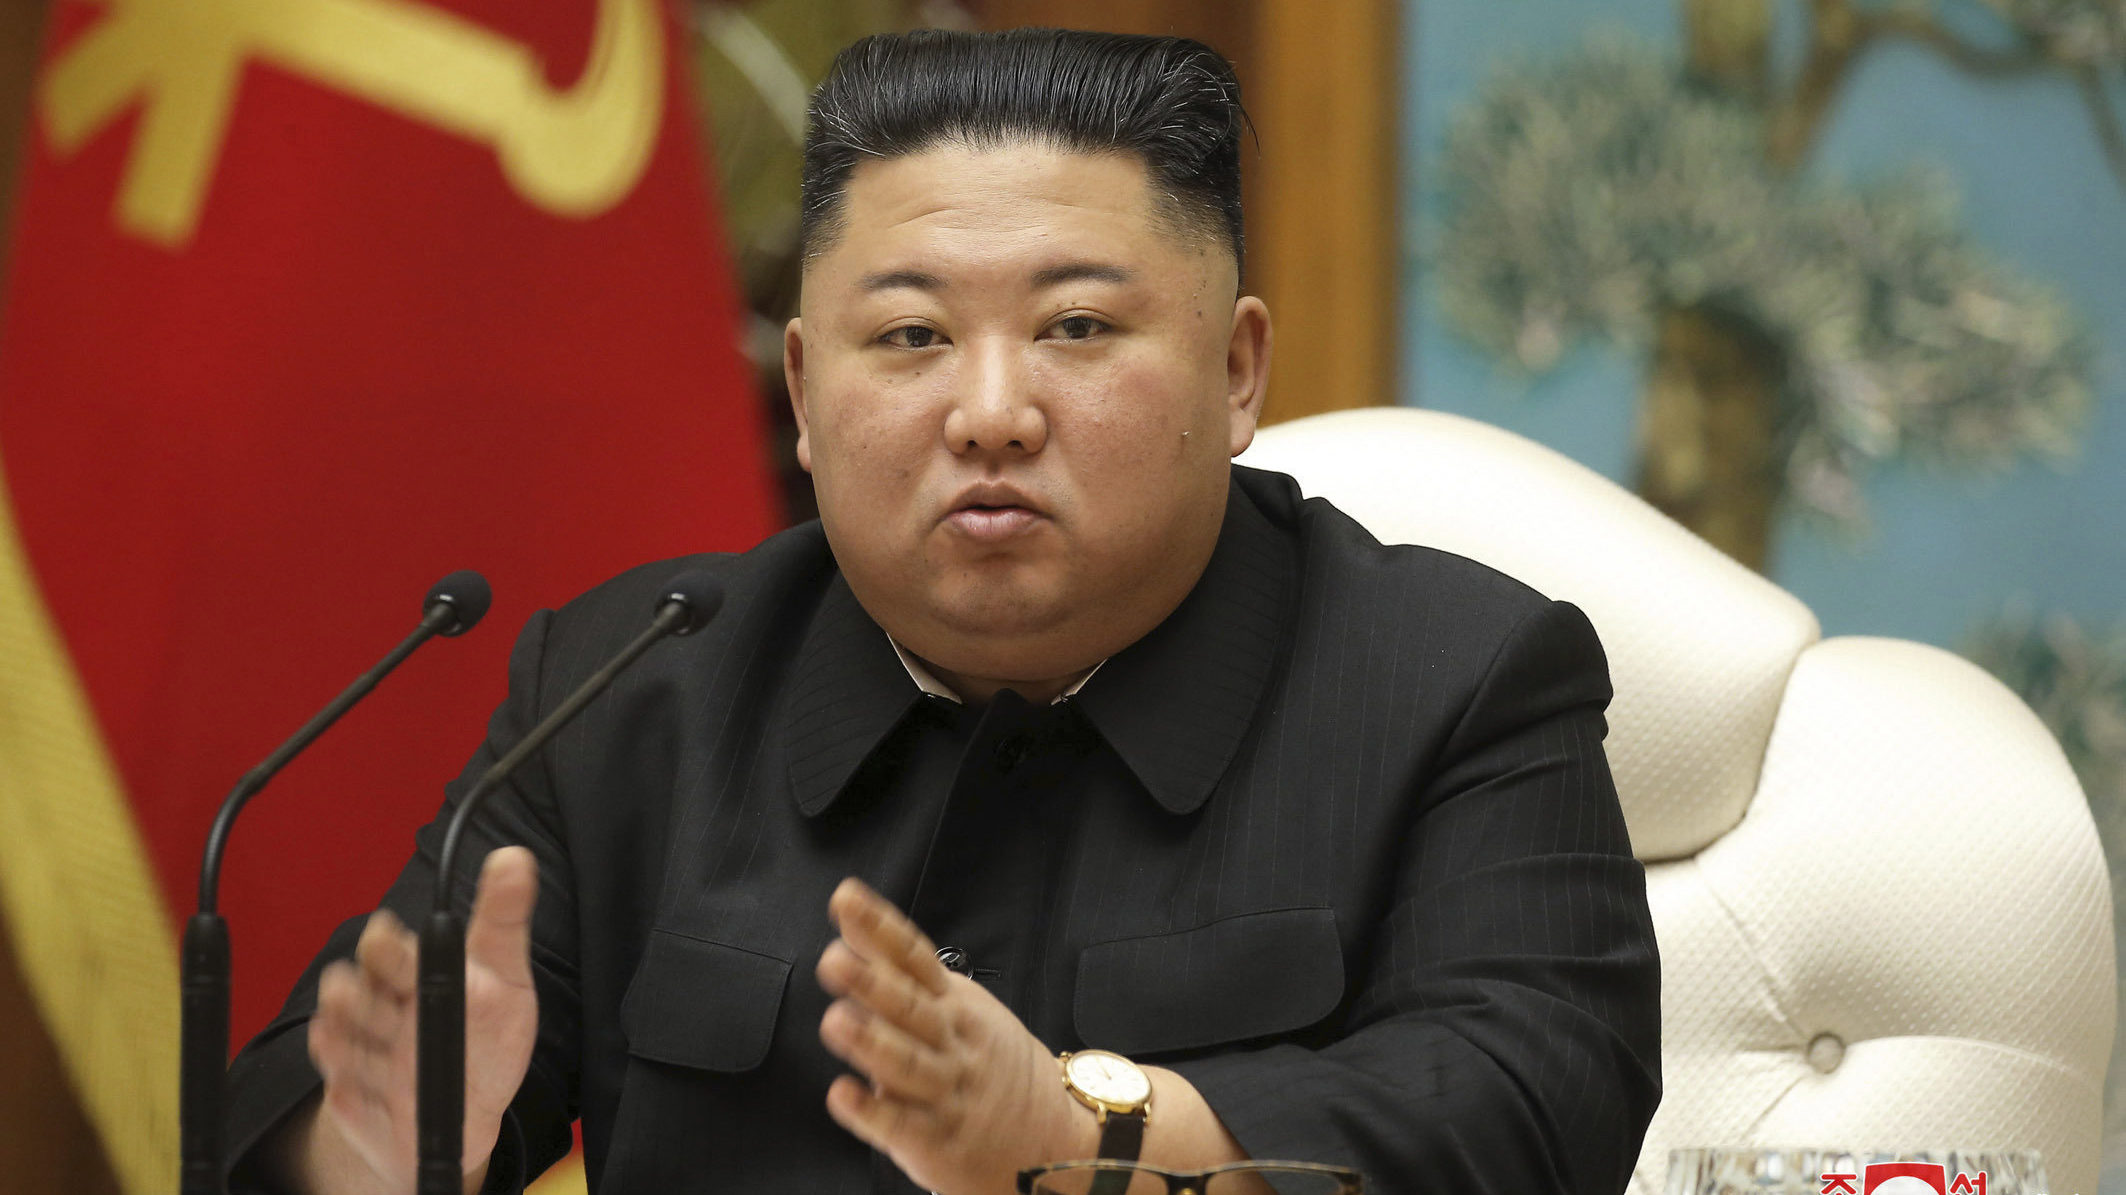 Tíz éve betöltetlen posztot szerzett meg az észak-koreai diktátor